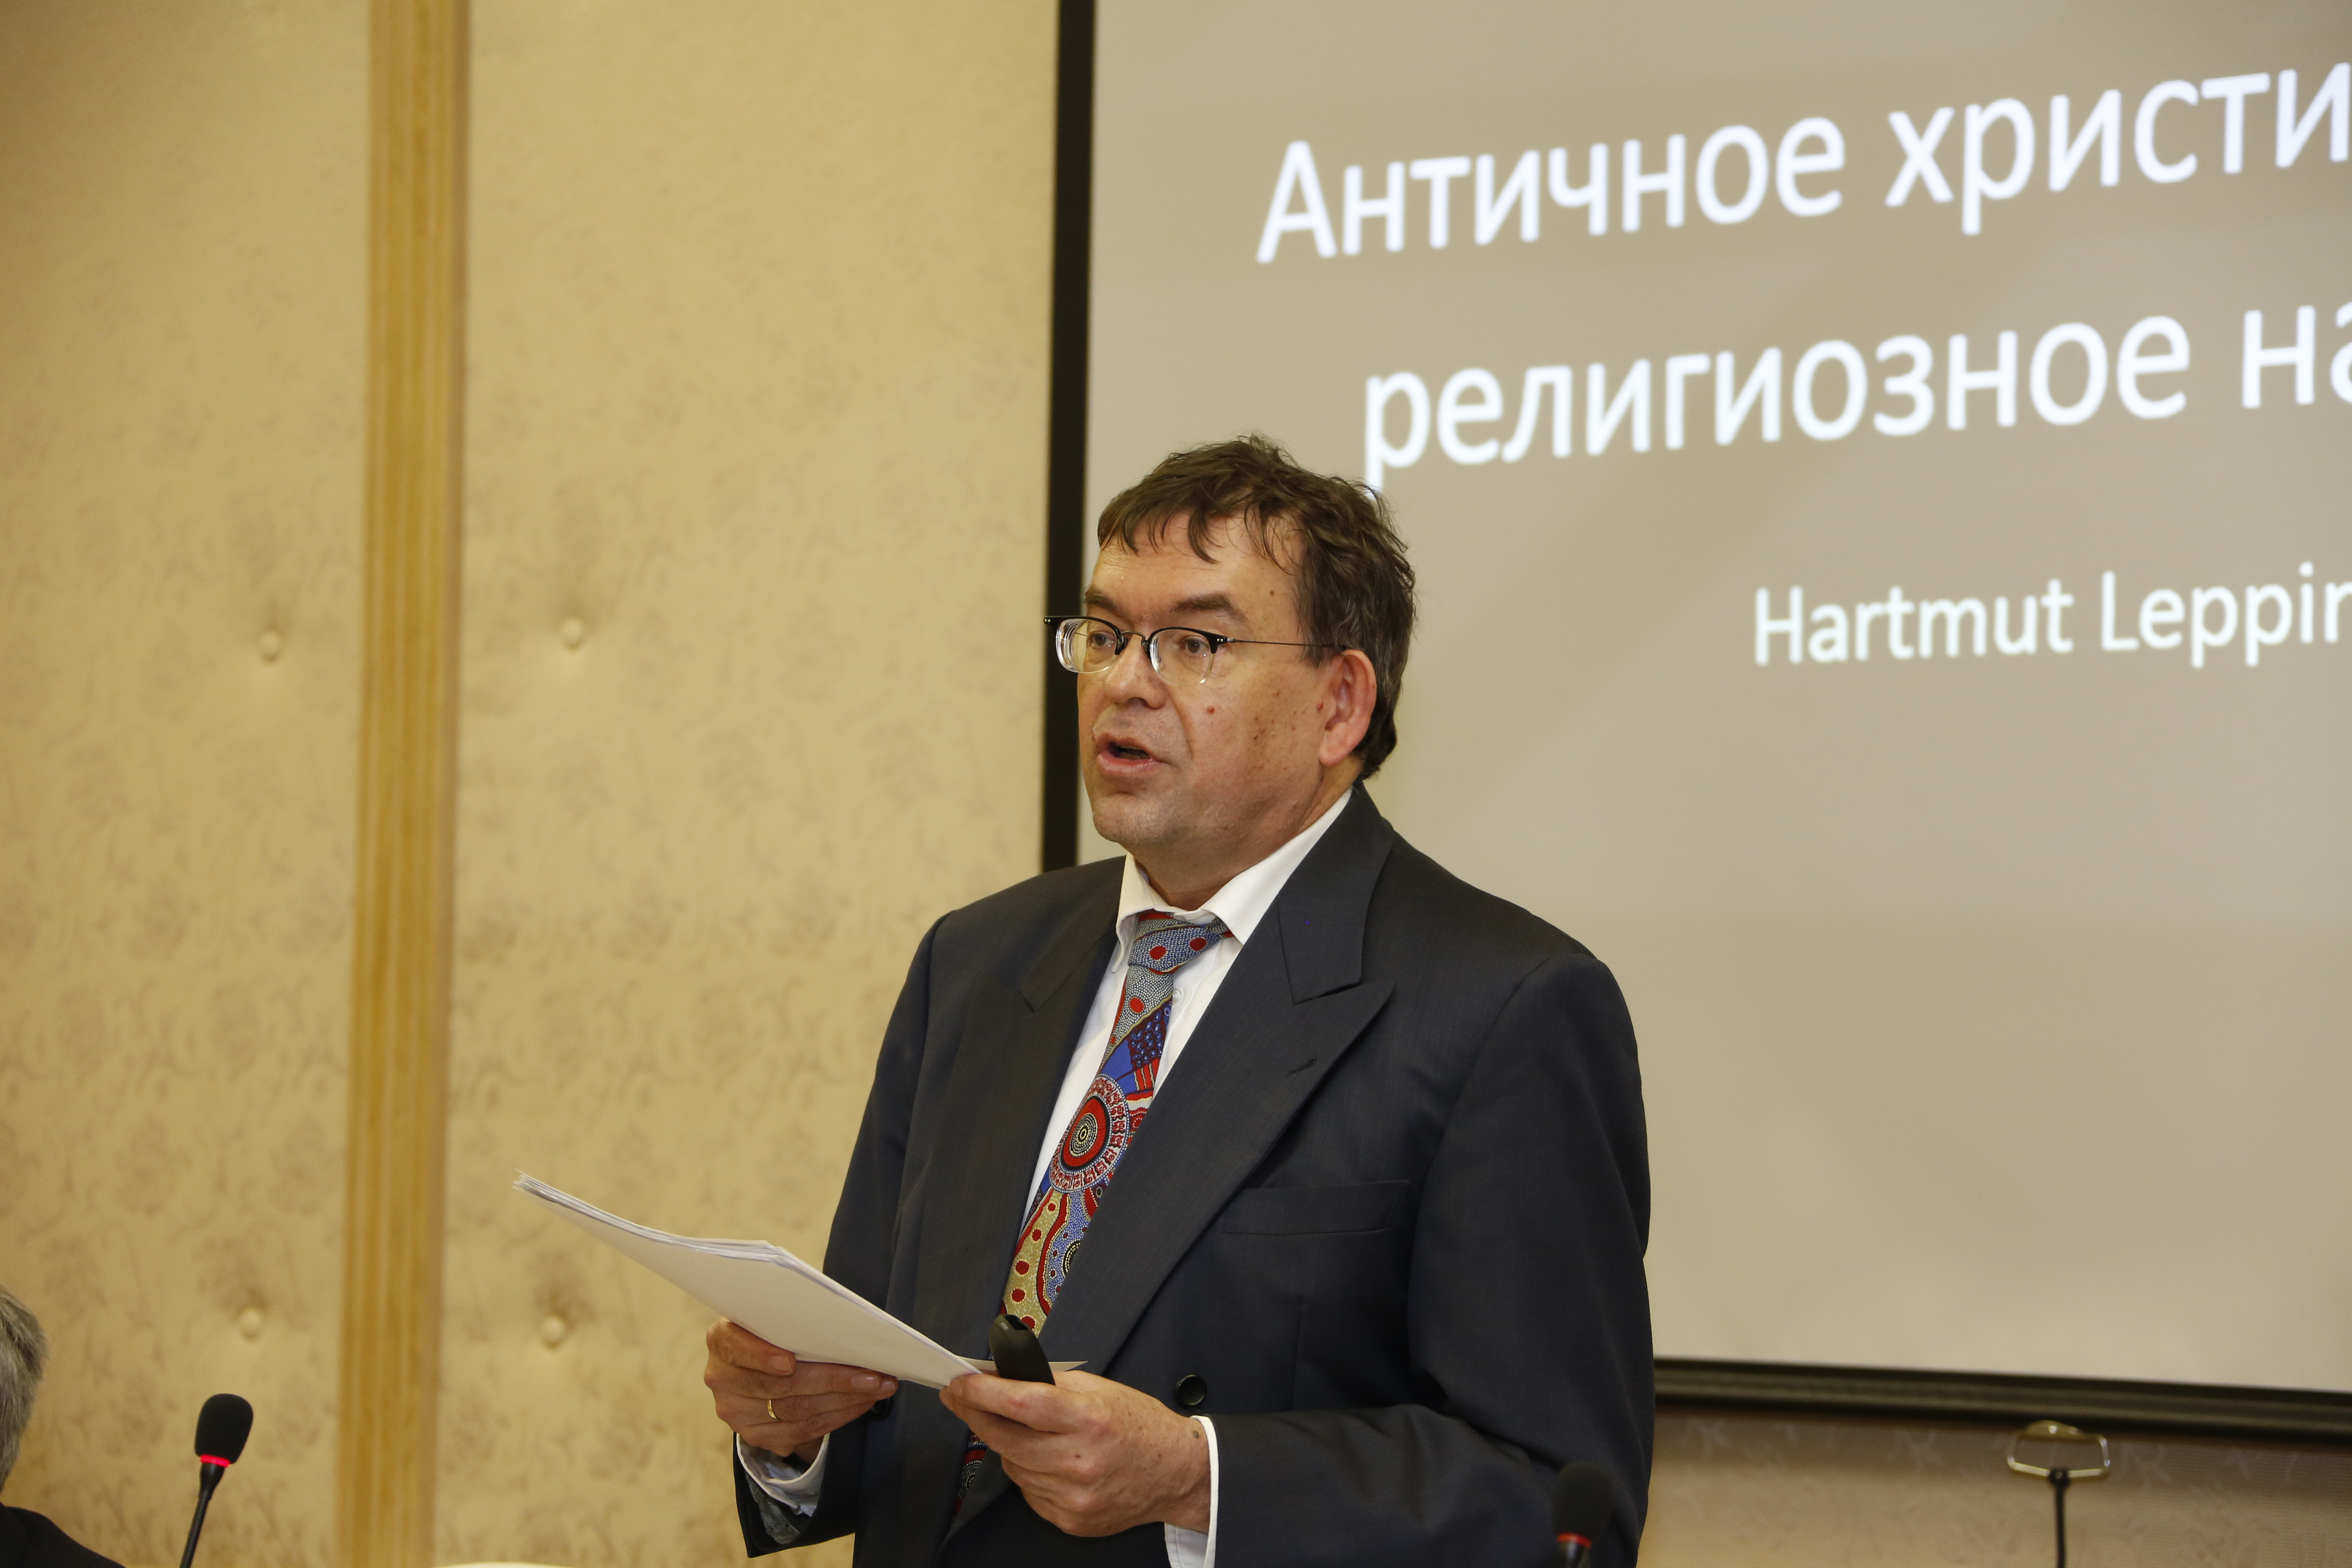 Professor Hartmut Leppin (Goethe Universität Frankfurt am Main) an der Lomonosov-Universität in Moskau